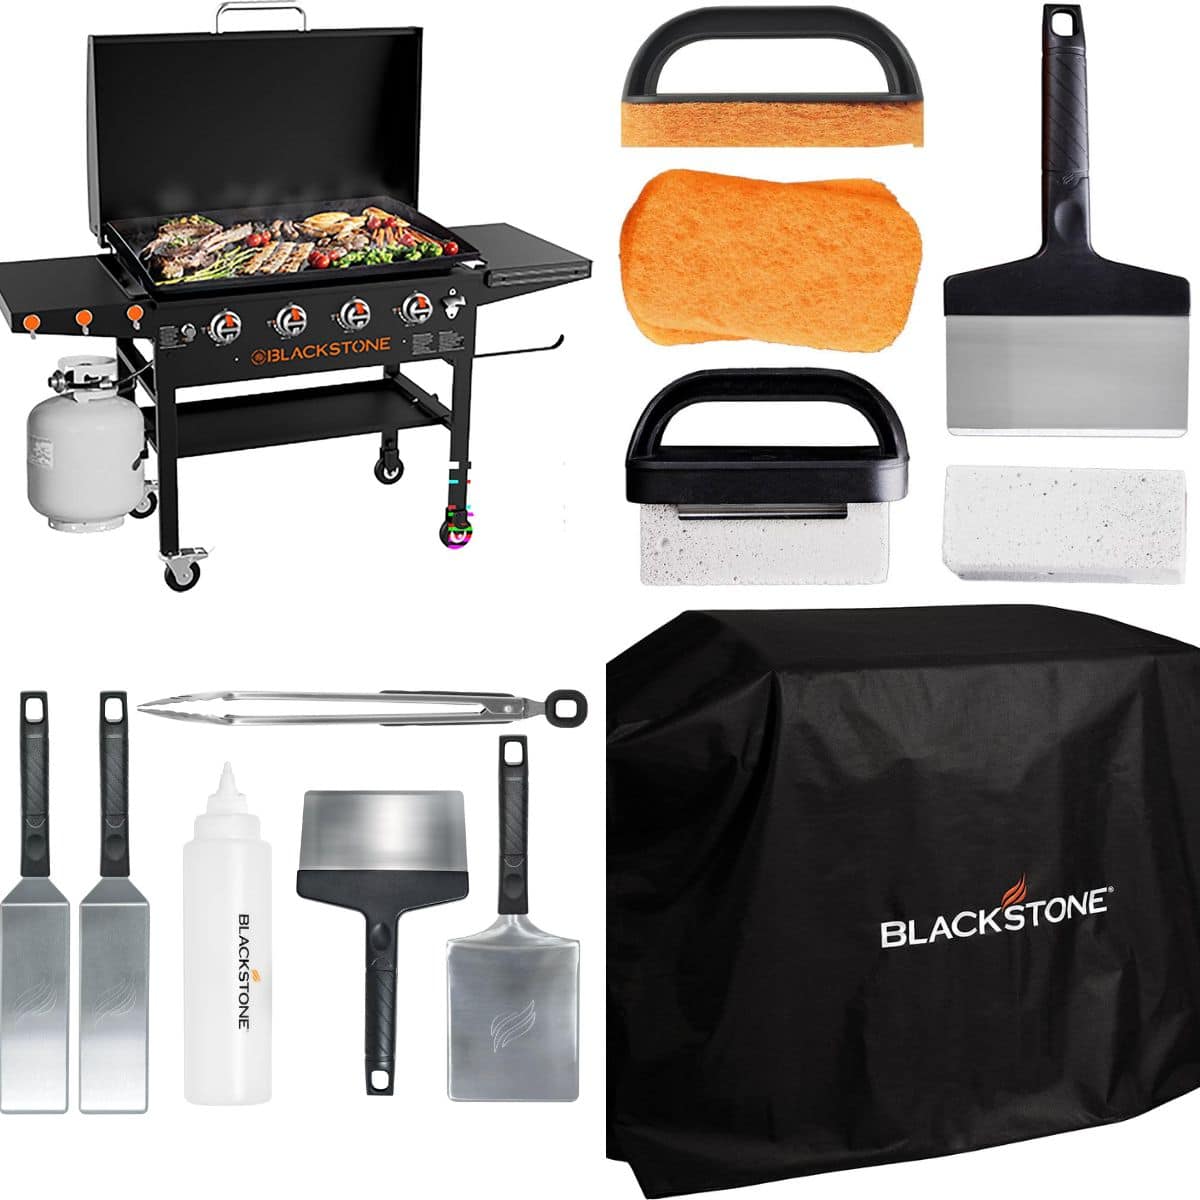 Blackstone grill and accessories.